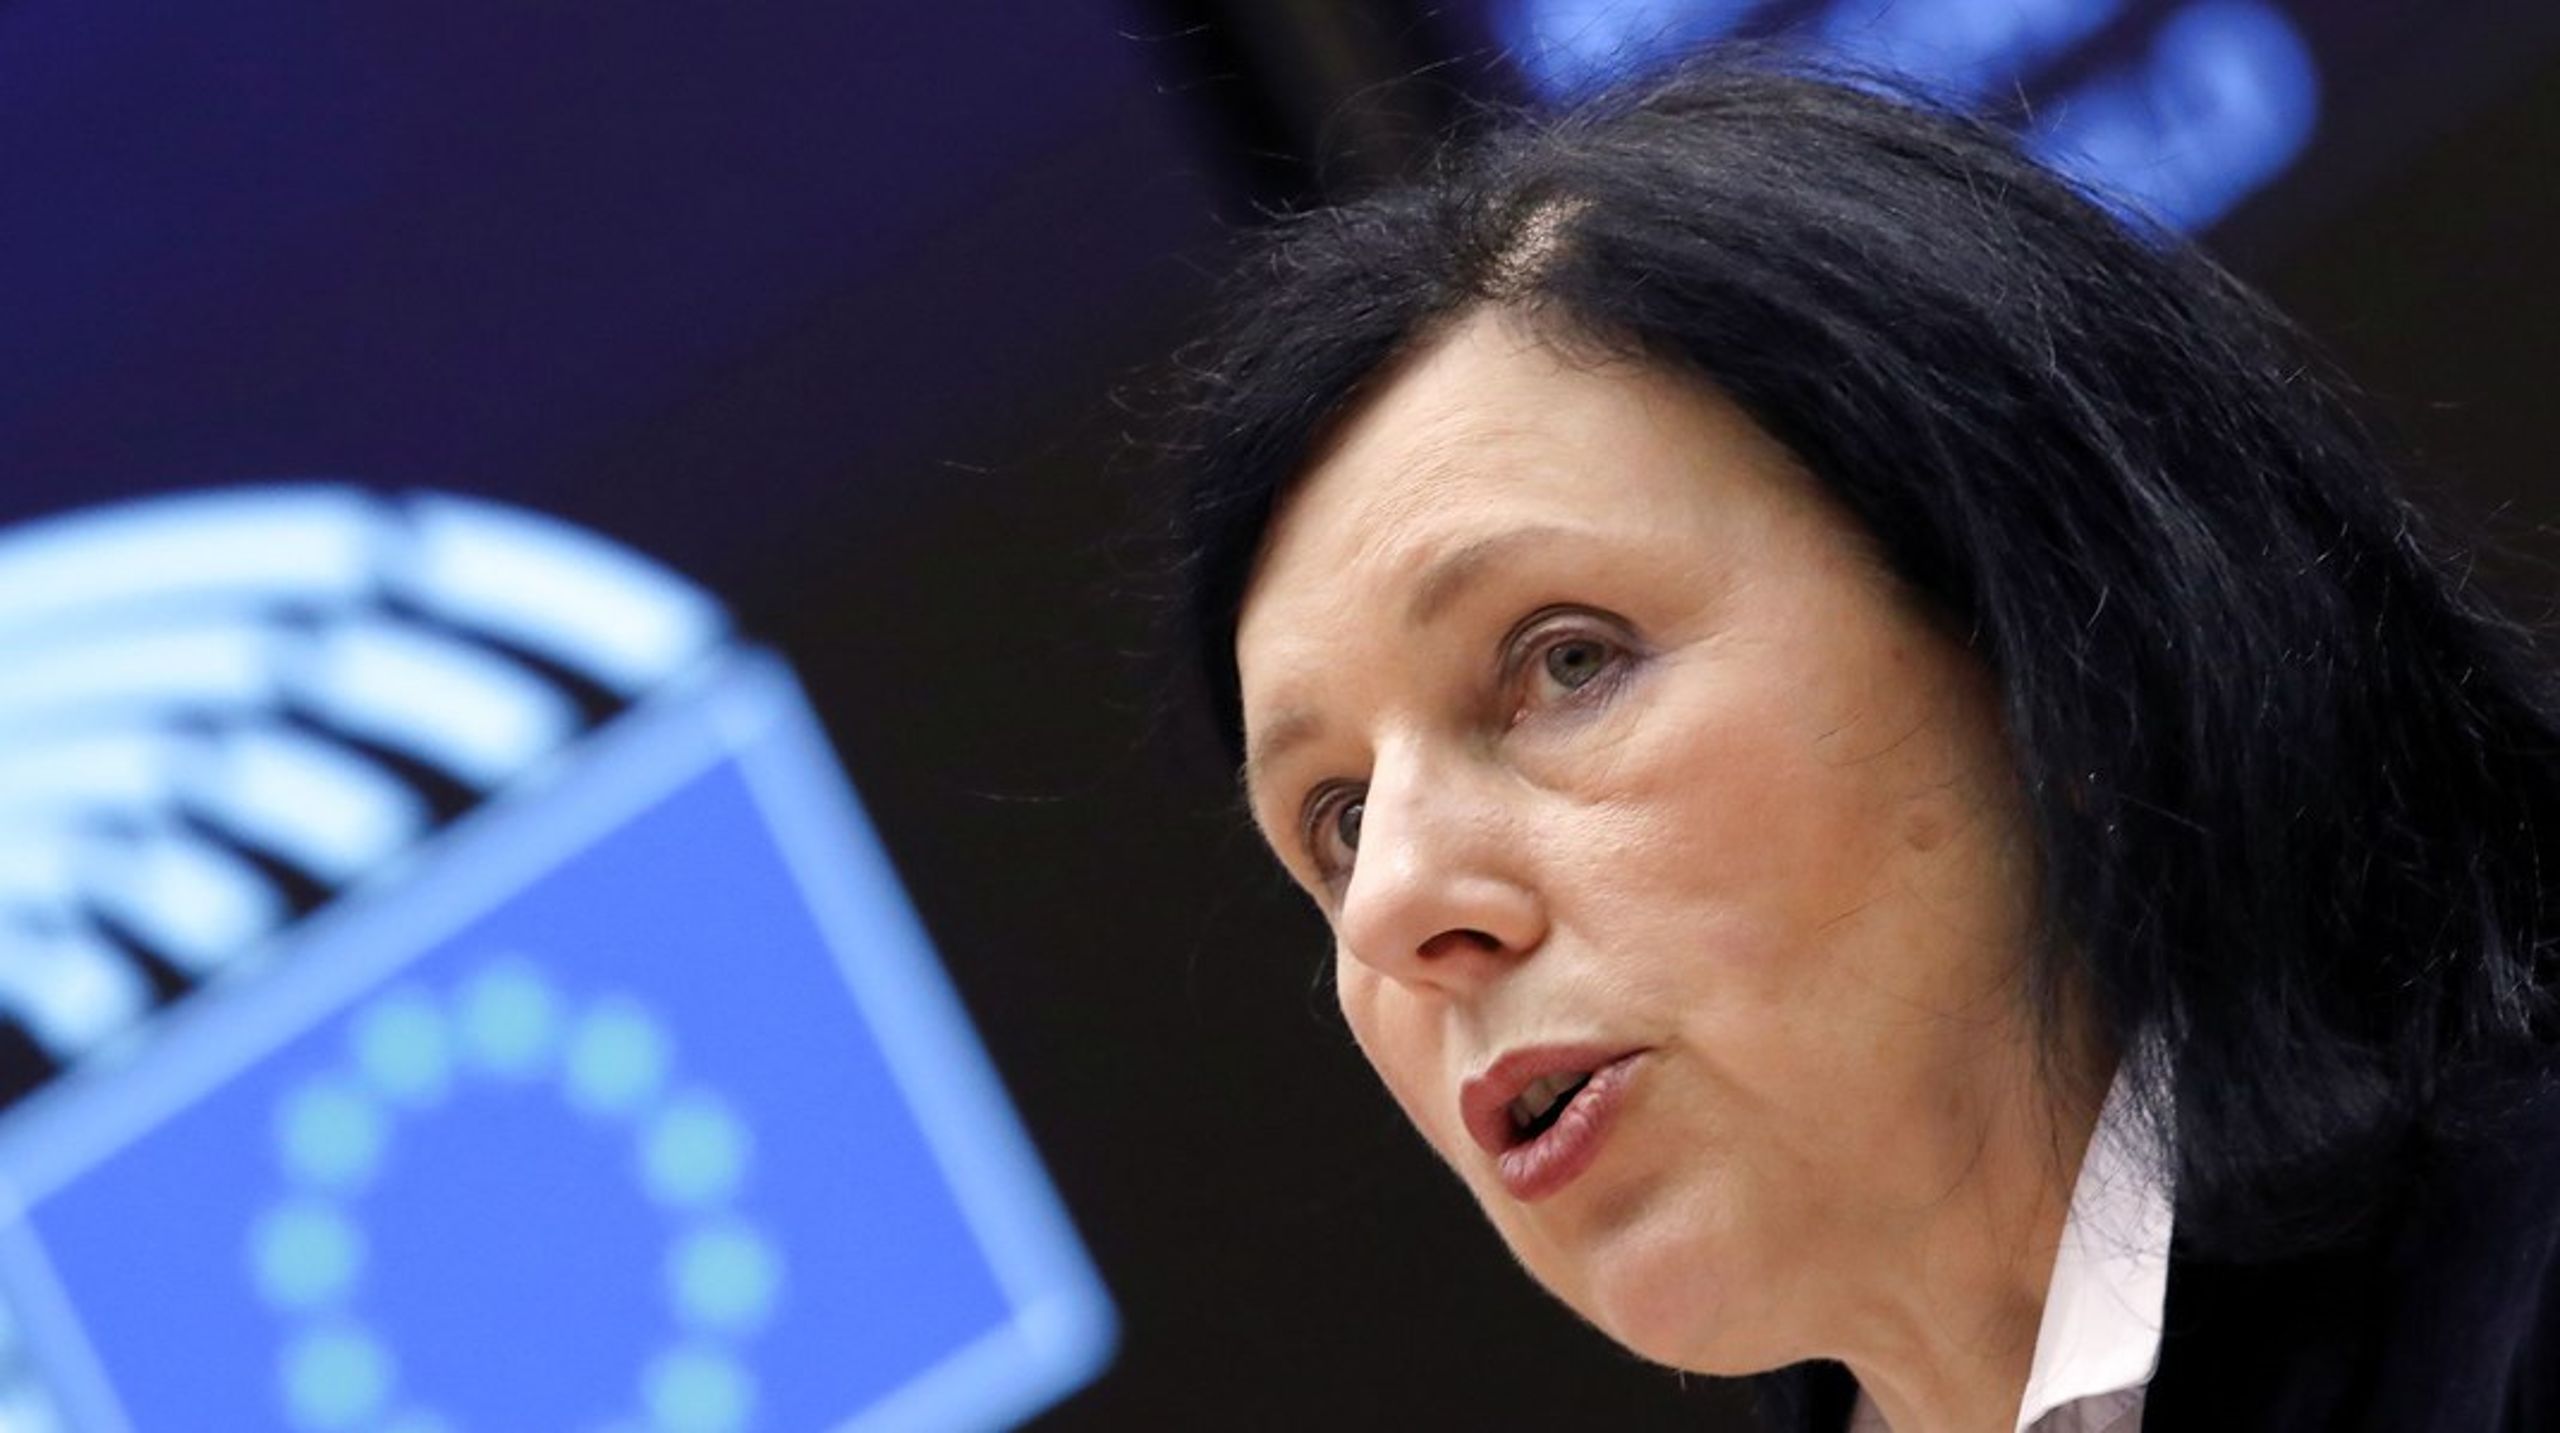 Da europæiske politikere begyndte at arbejde på en ny databeskyttelsesliv, blev den af mange betragtet som en "europæisk fiks idé," skriver EU-kommissær Vĕra Jourová.